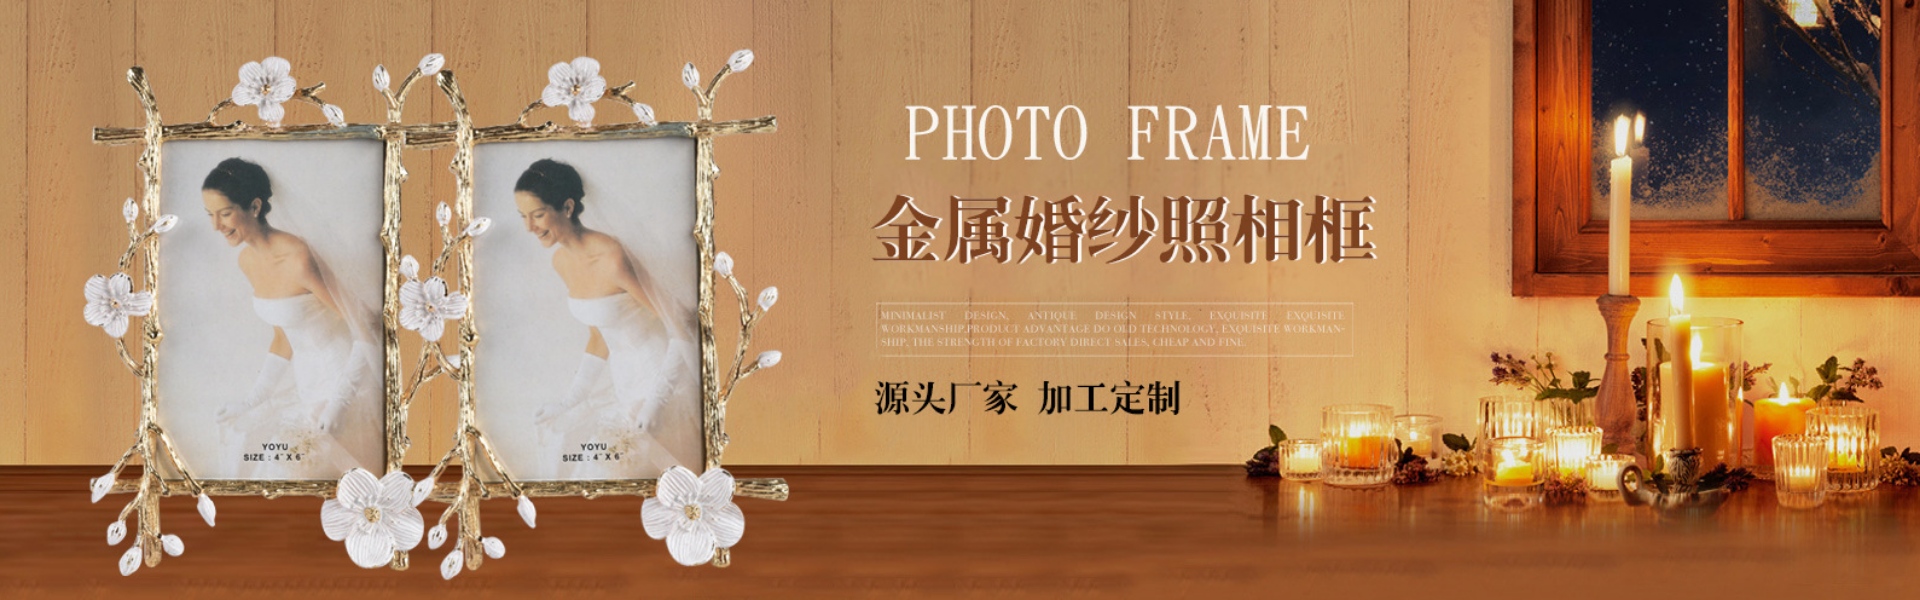 đồ nội thất,Dongguan xinzhirun Crafts Co., Ltd